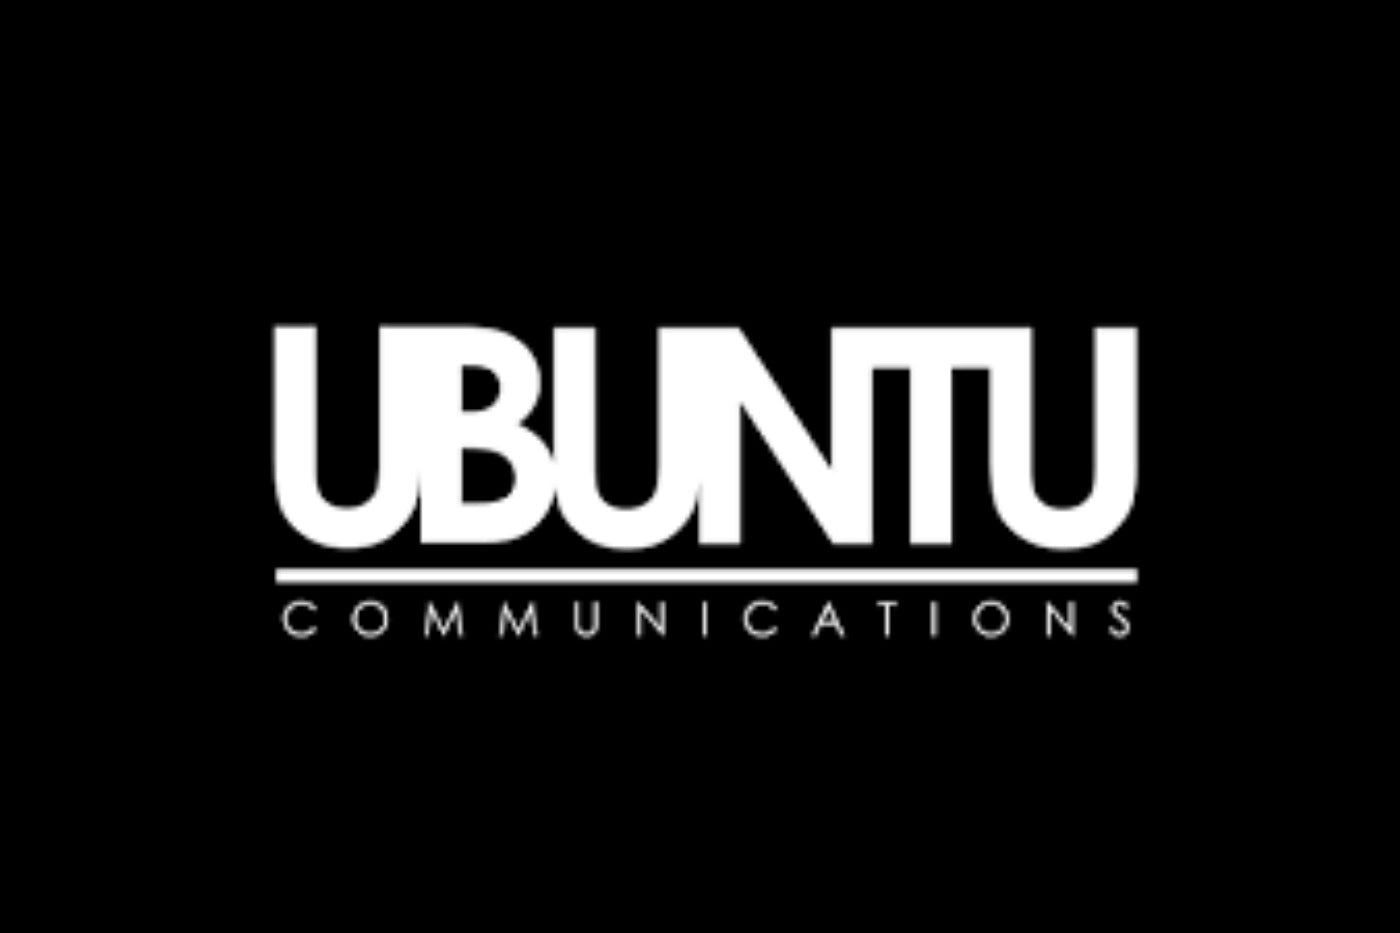 Thank You - Feedback from Ubuntu Communications